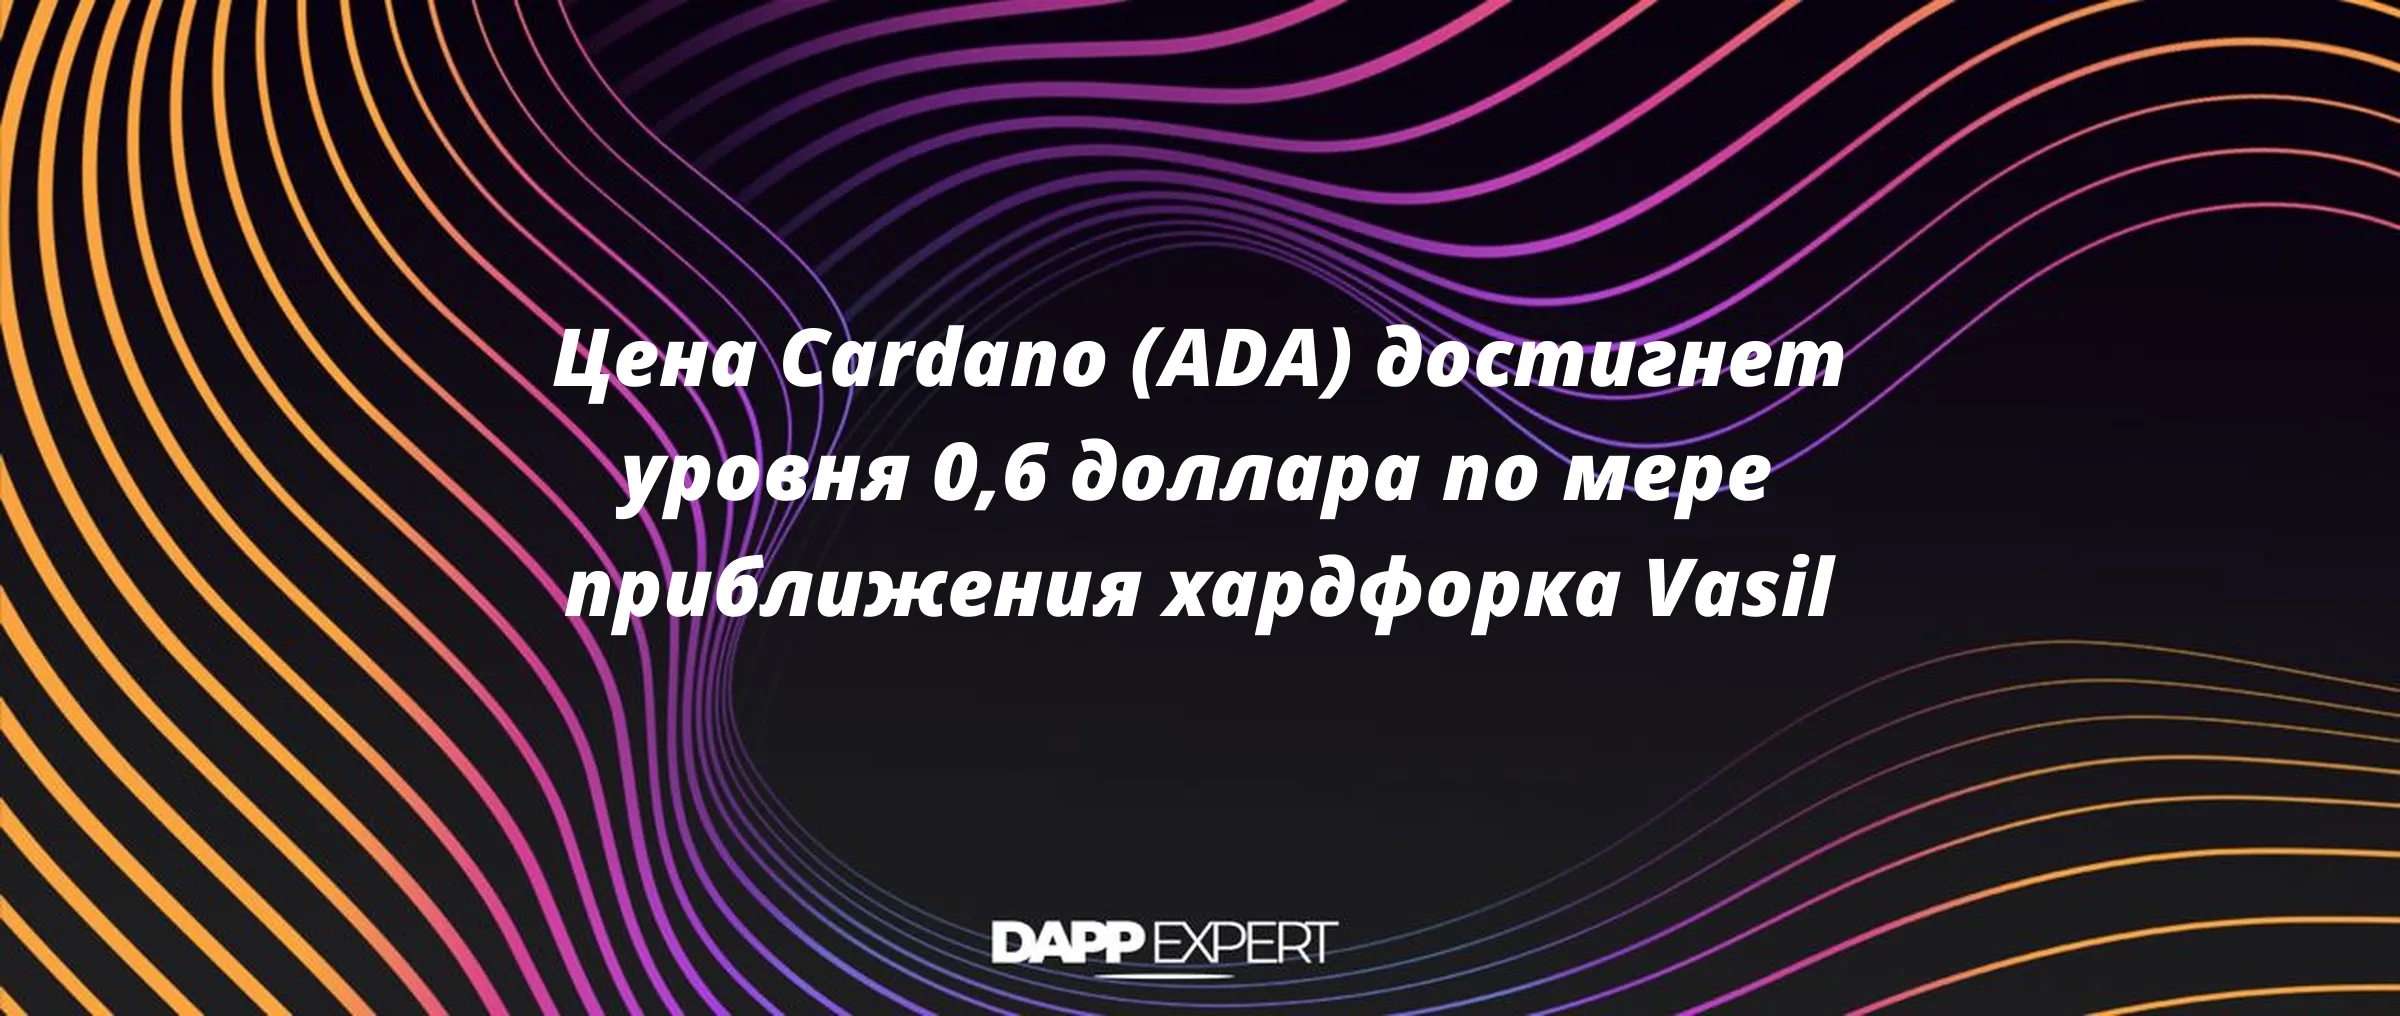 Цена Cardano (ADA) достигнет уровня 0,6 доллара по мере приближения хардфорка Vasil